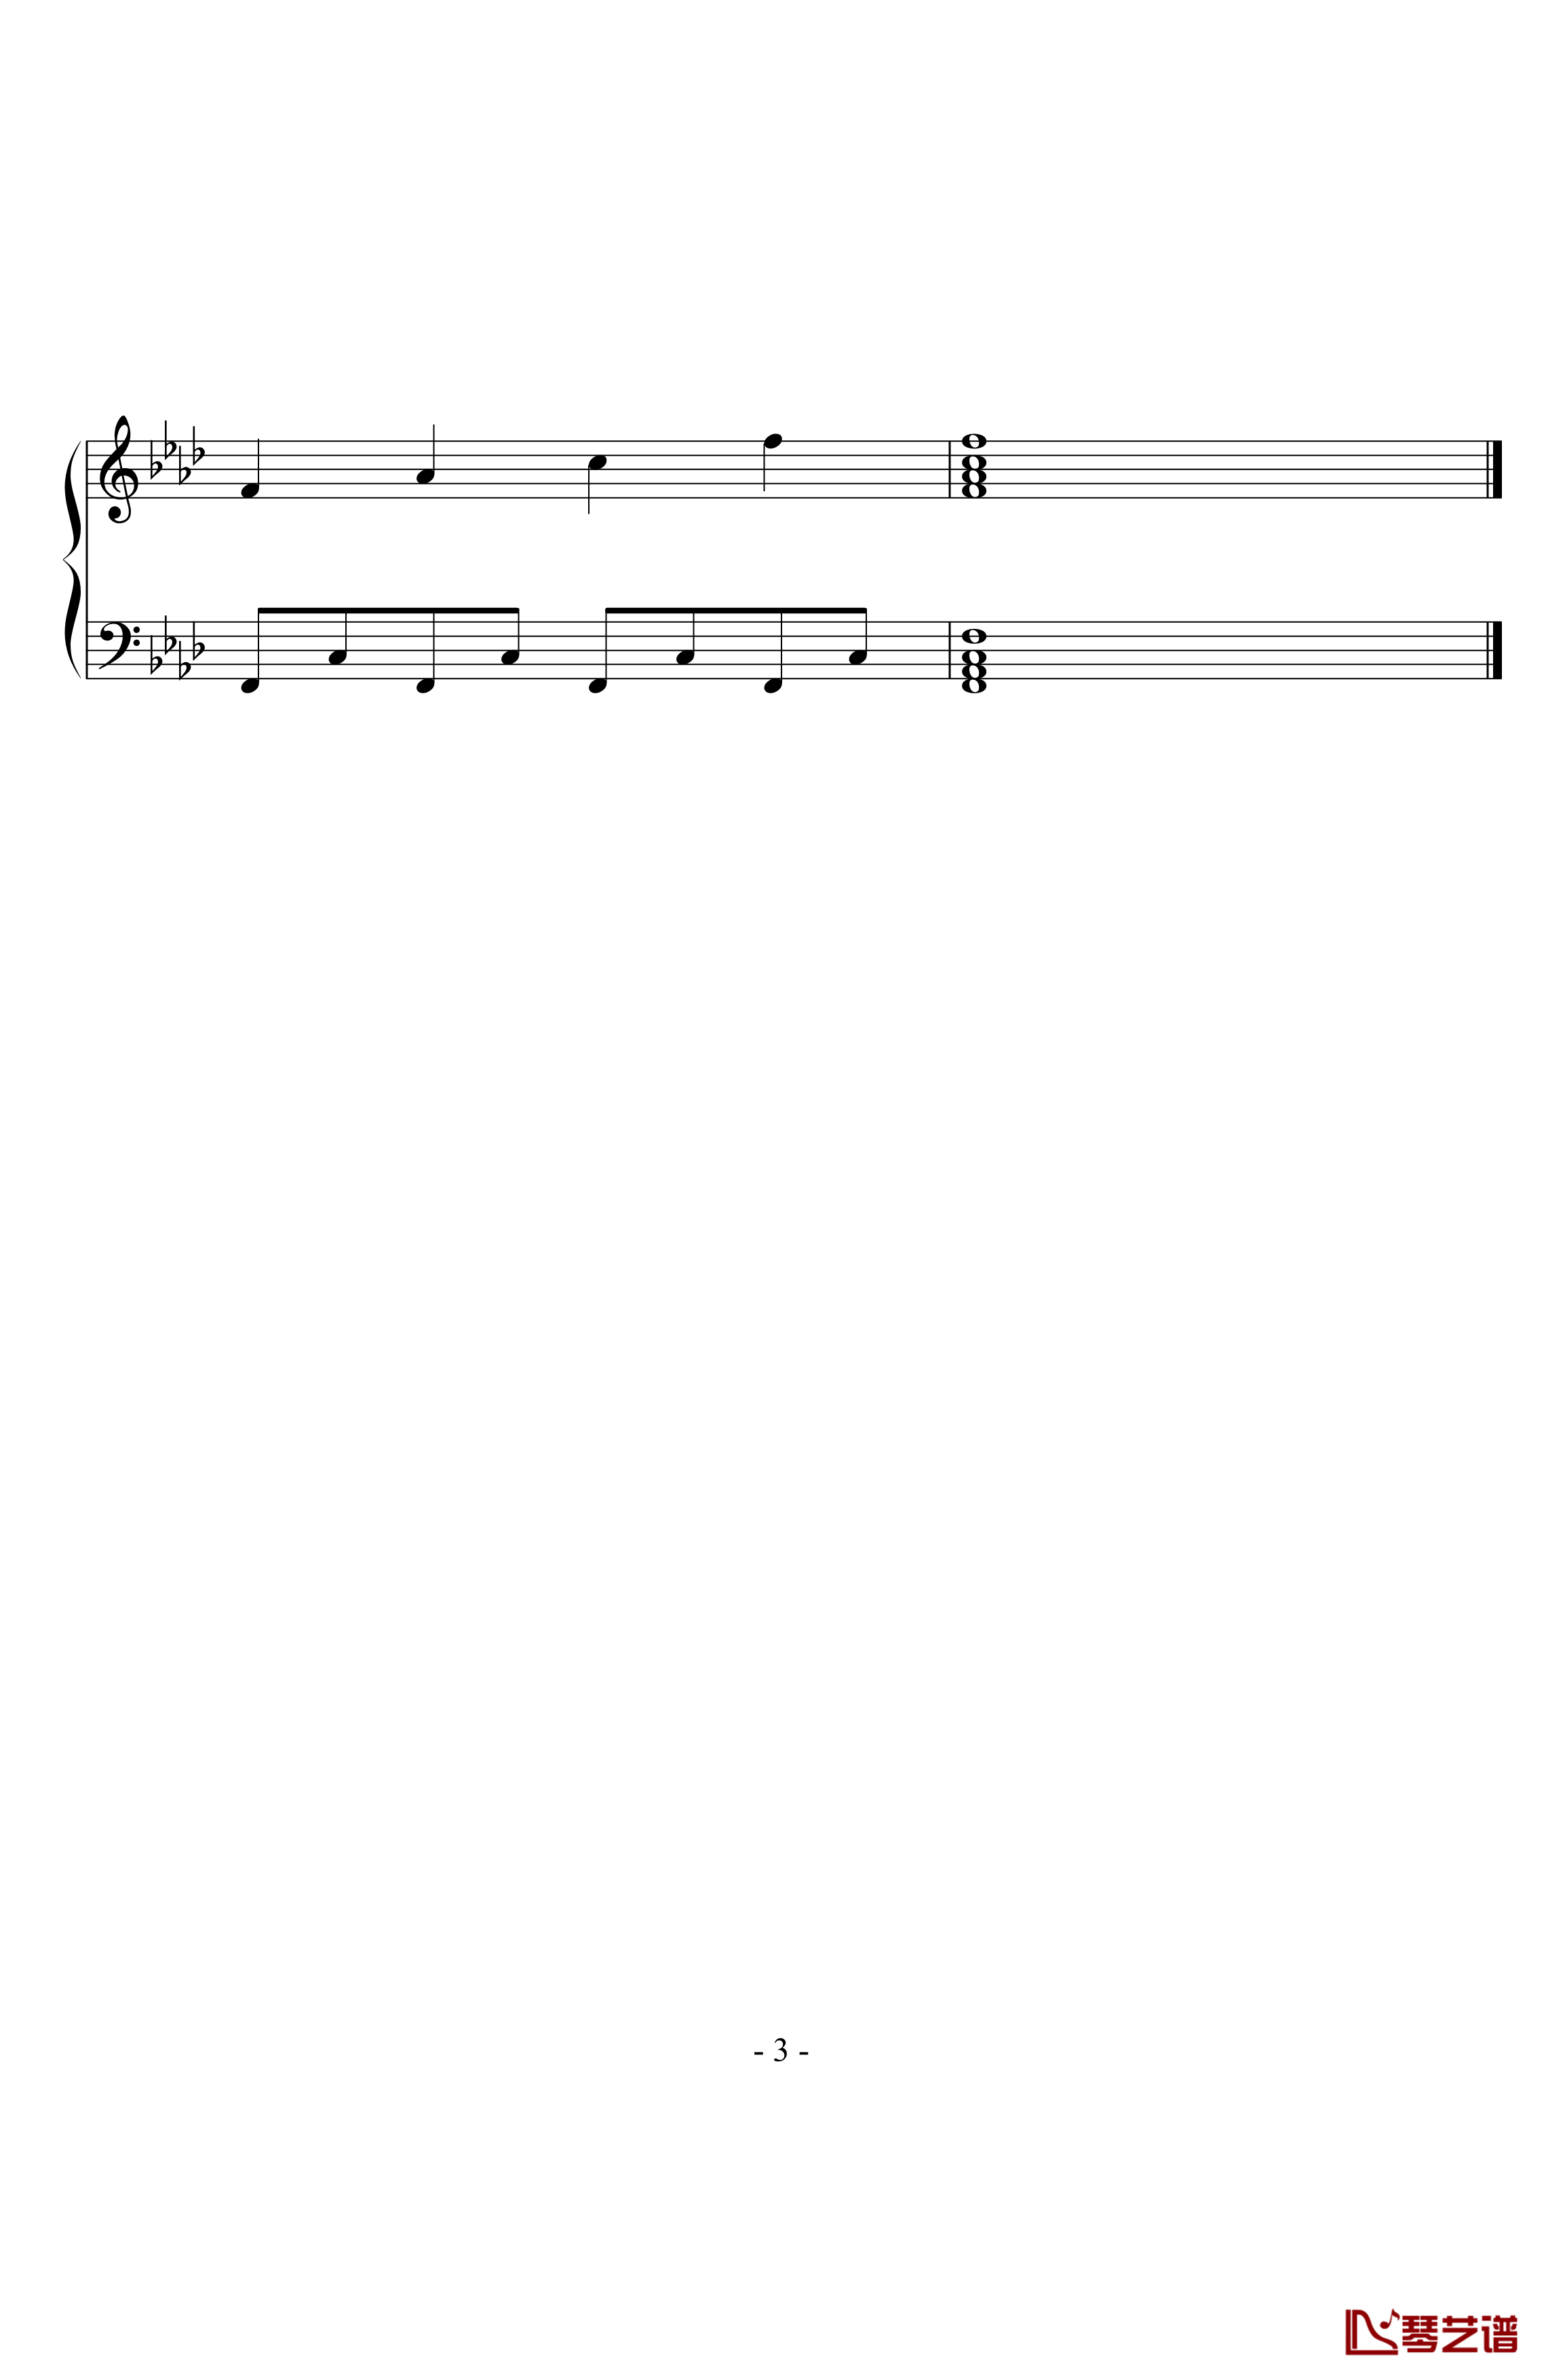 练习曲钢琴谱-zxbb3